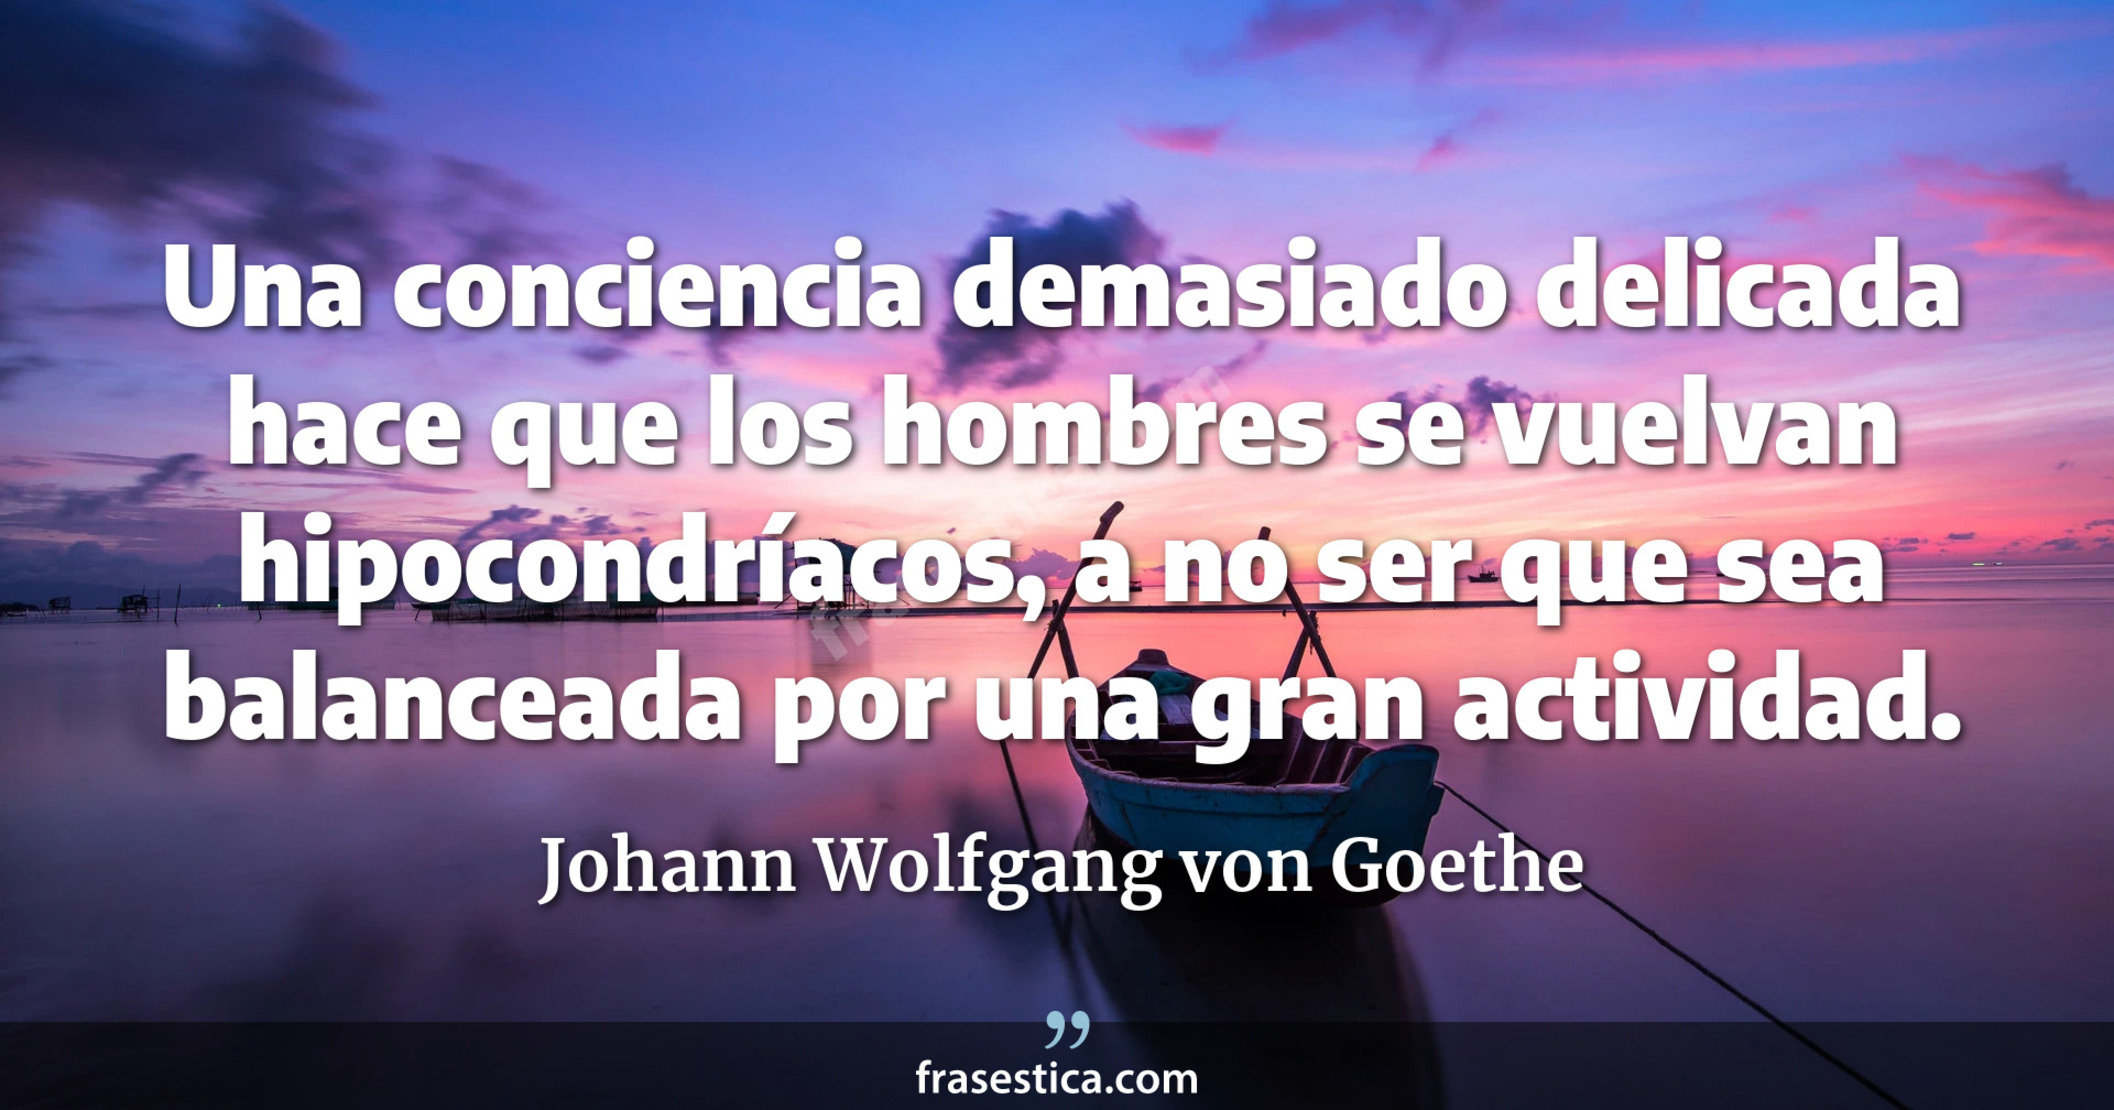 Una conciencia demasiado delicada hace que los hombres se vuelvan hipocondríacos, a no ser que sea balanceada por una gran actividad. - Johann Wolfgang von Goethe